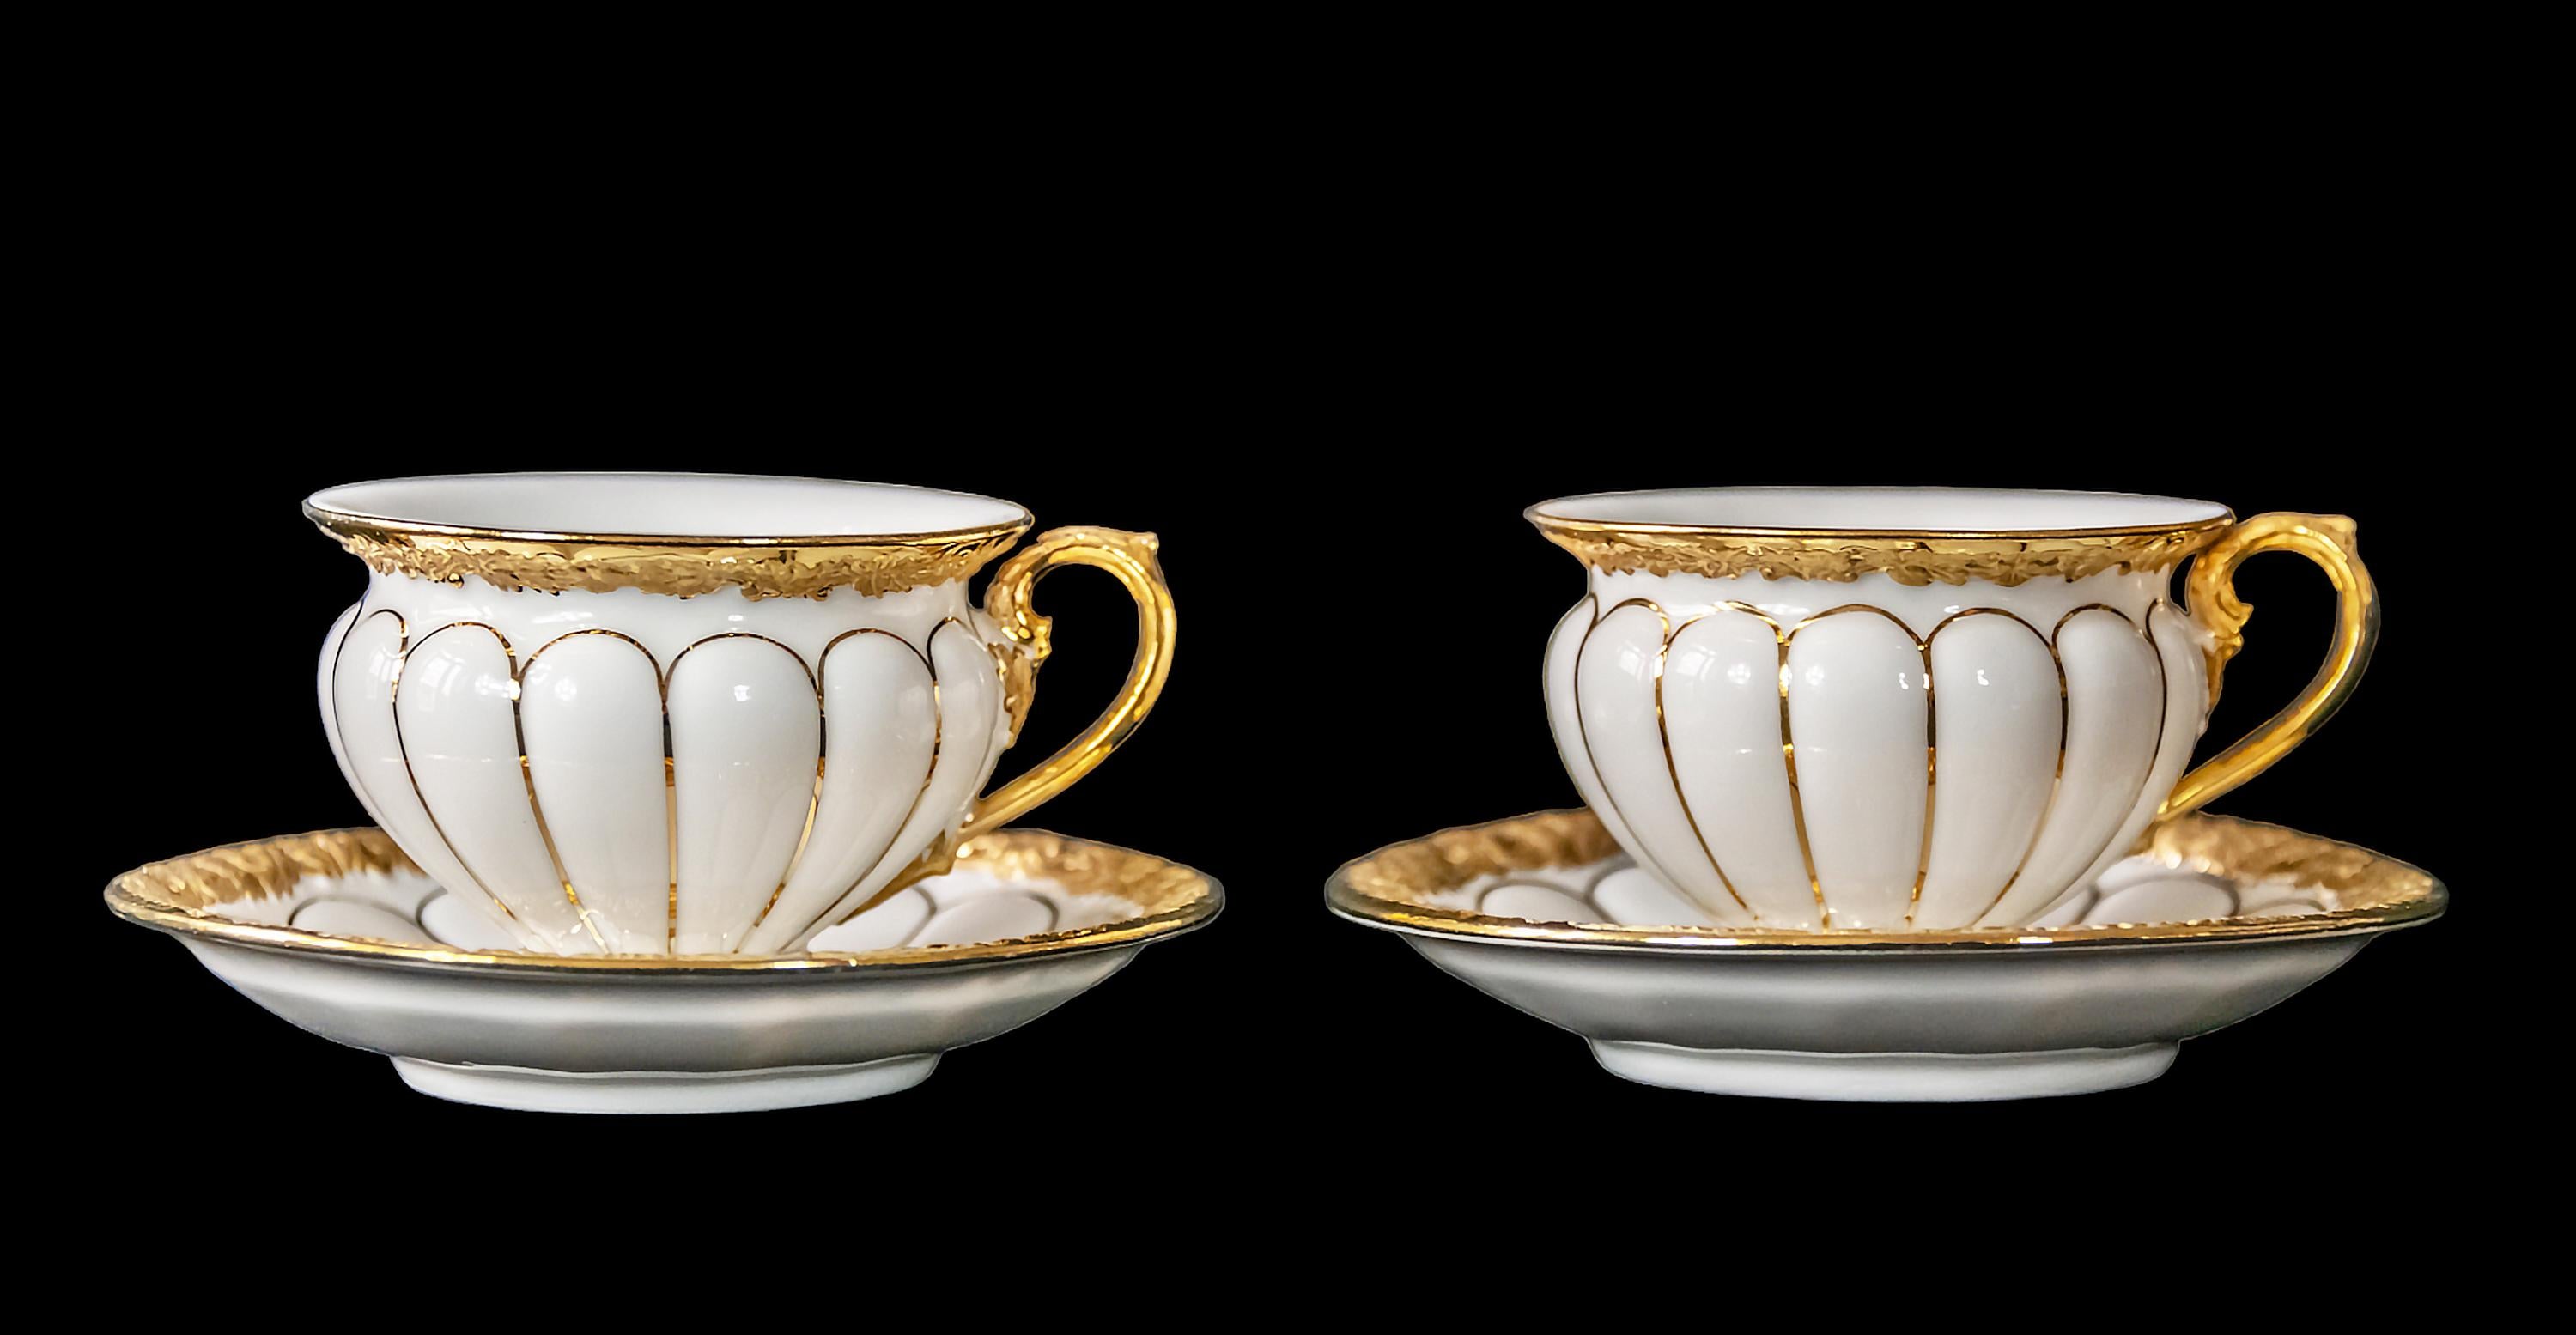 Paar Kaffeetassen mit Untertassen aus Meissener Porzellan, reich verziert mit Gold.
Maßnahmen:
Becher: h 5 x7,5 x 9 cm
Untertasse: 12 cm

.